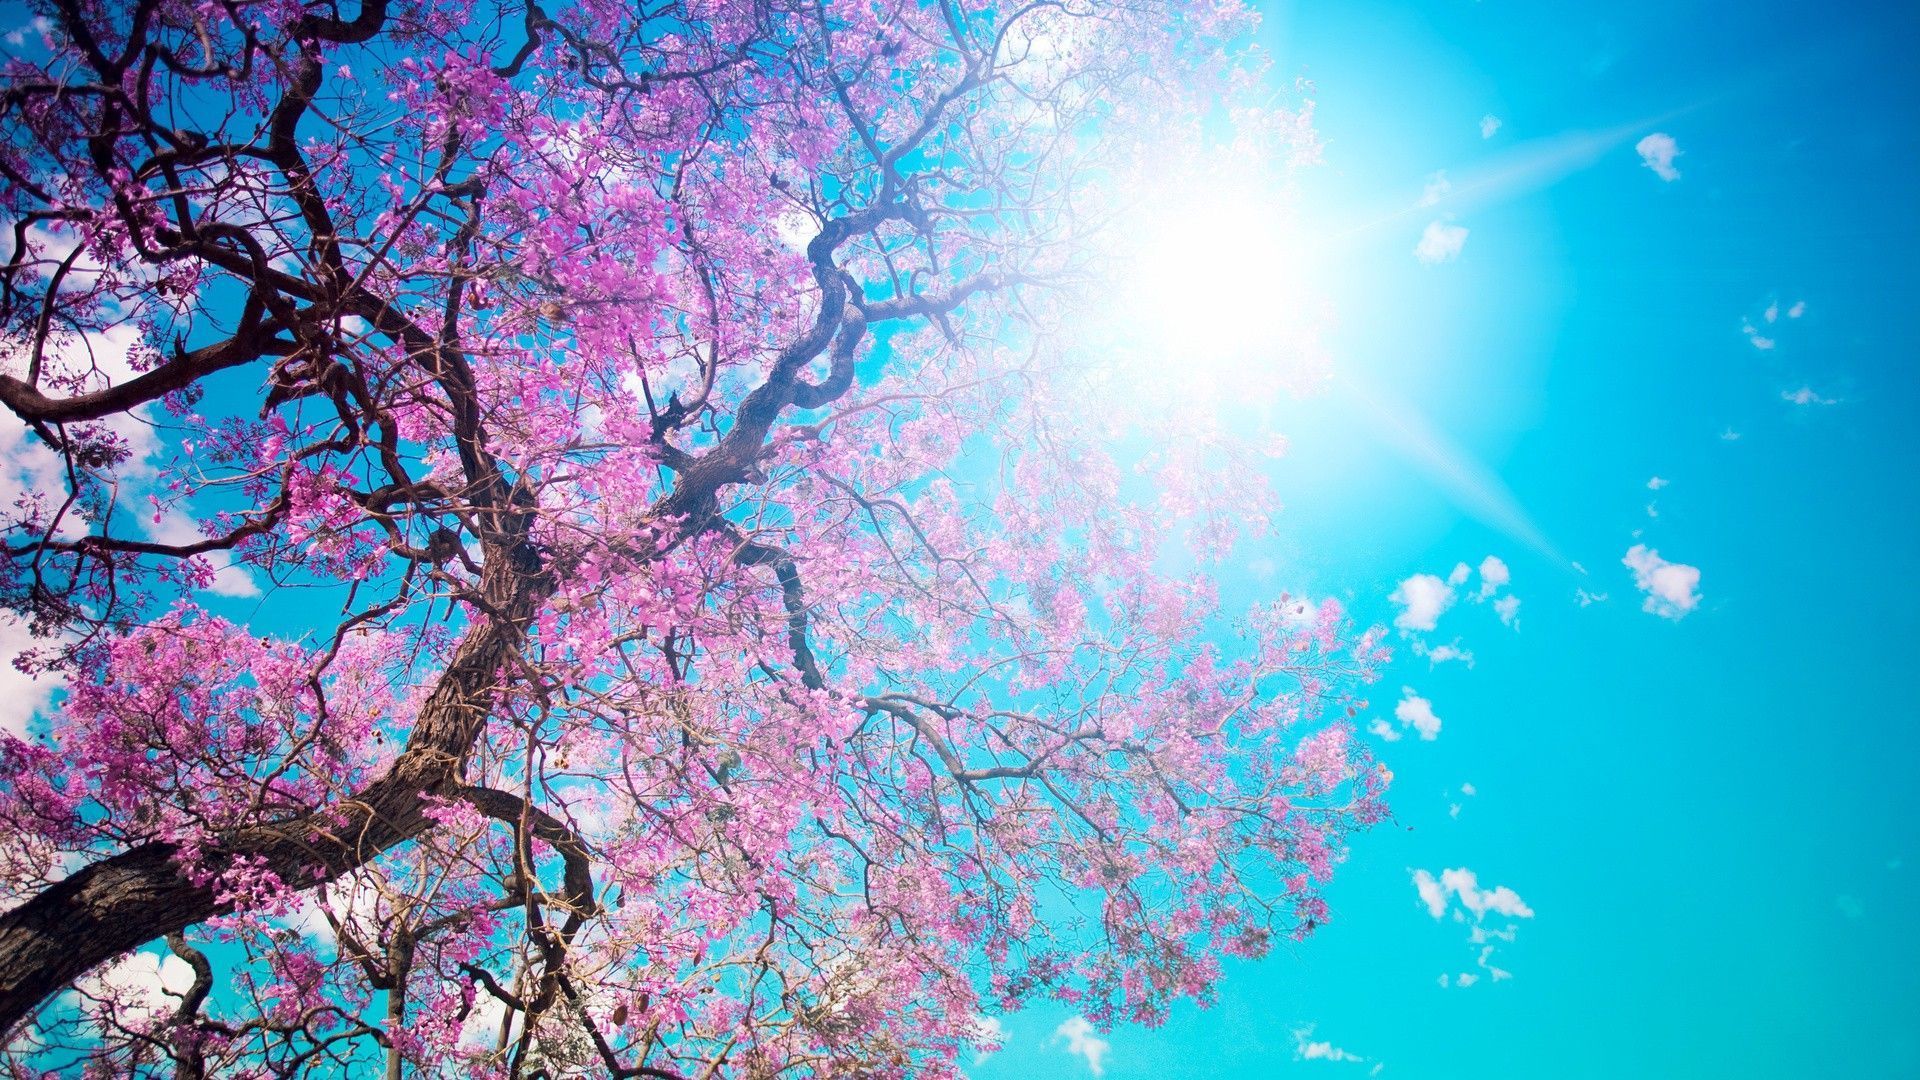 Cherry Blossom Tree Wallpaper Gallery #nsur18 - Ehiyo.com